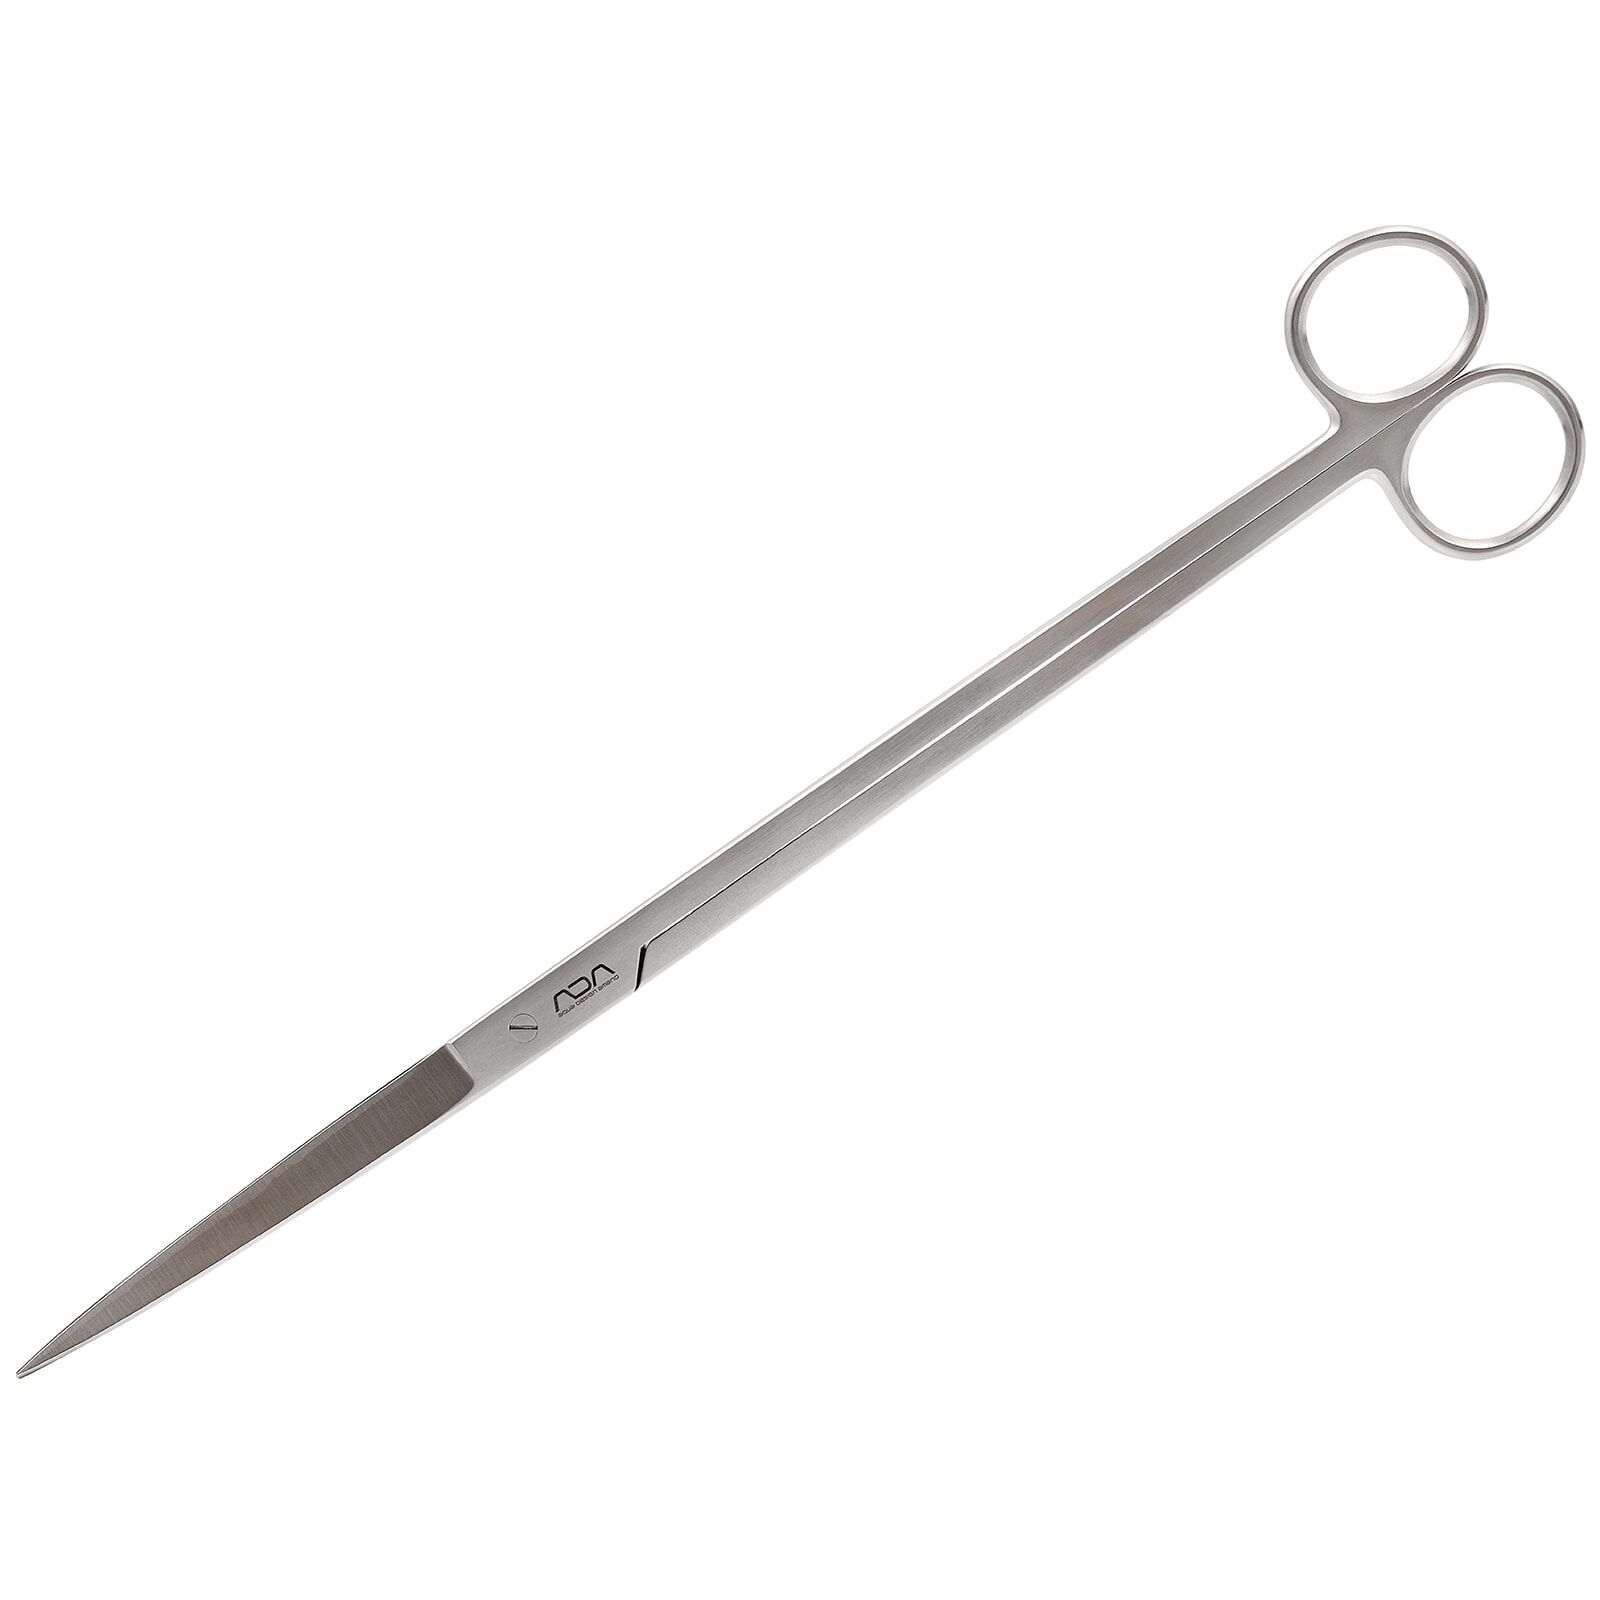 ADA - Trimming Scissors - Straight type